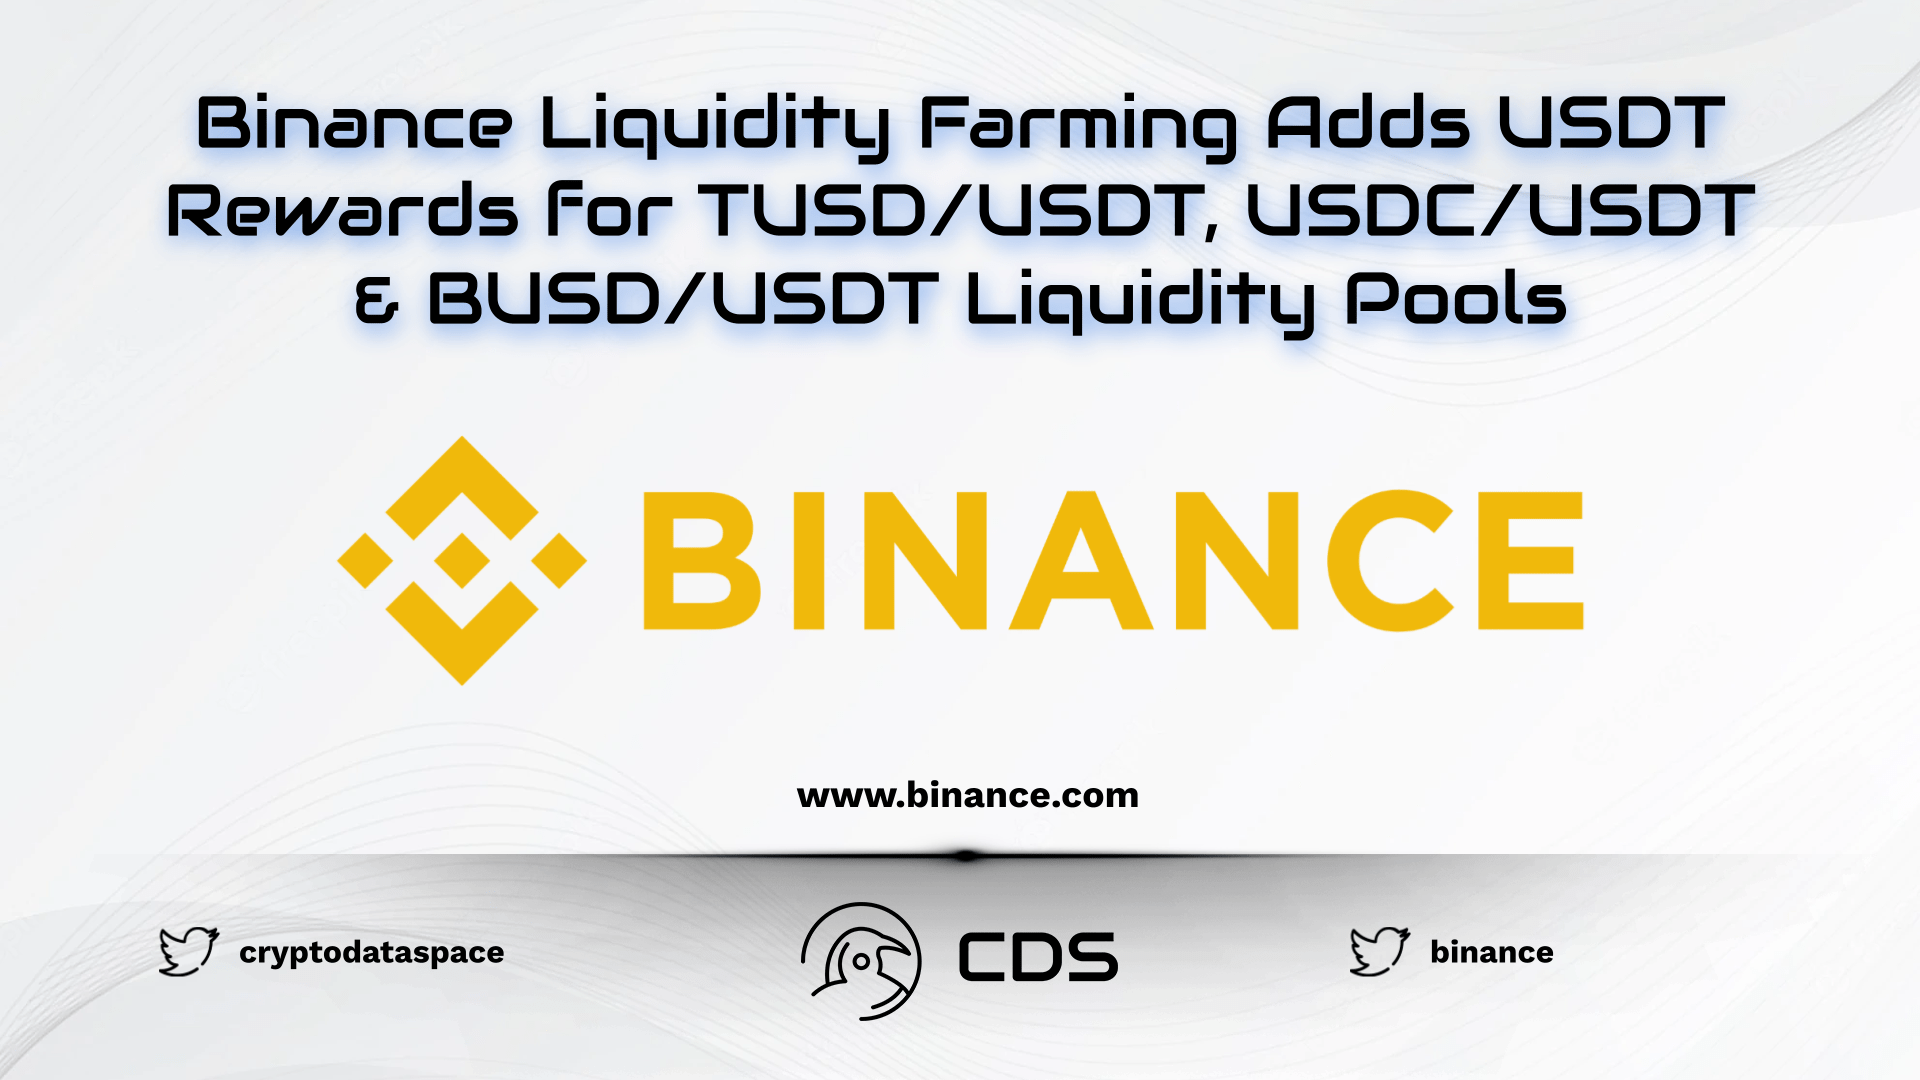 Binance Liquidity Farming Adds USDT Rewards for TUSDUSDT, USDCUSDT & BUSDUSDT Liquidity Pools